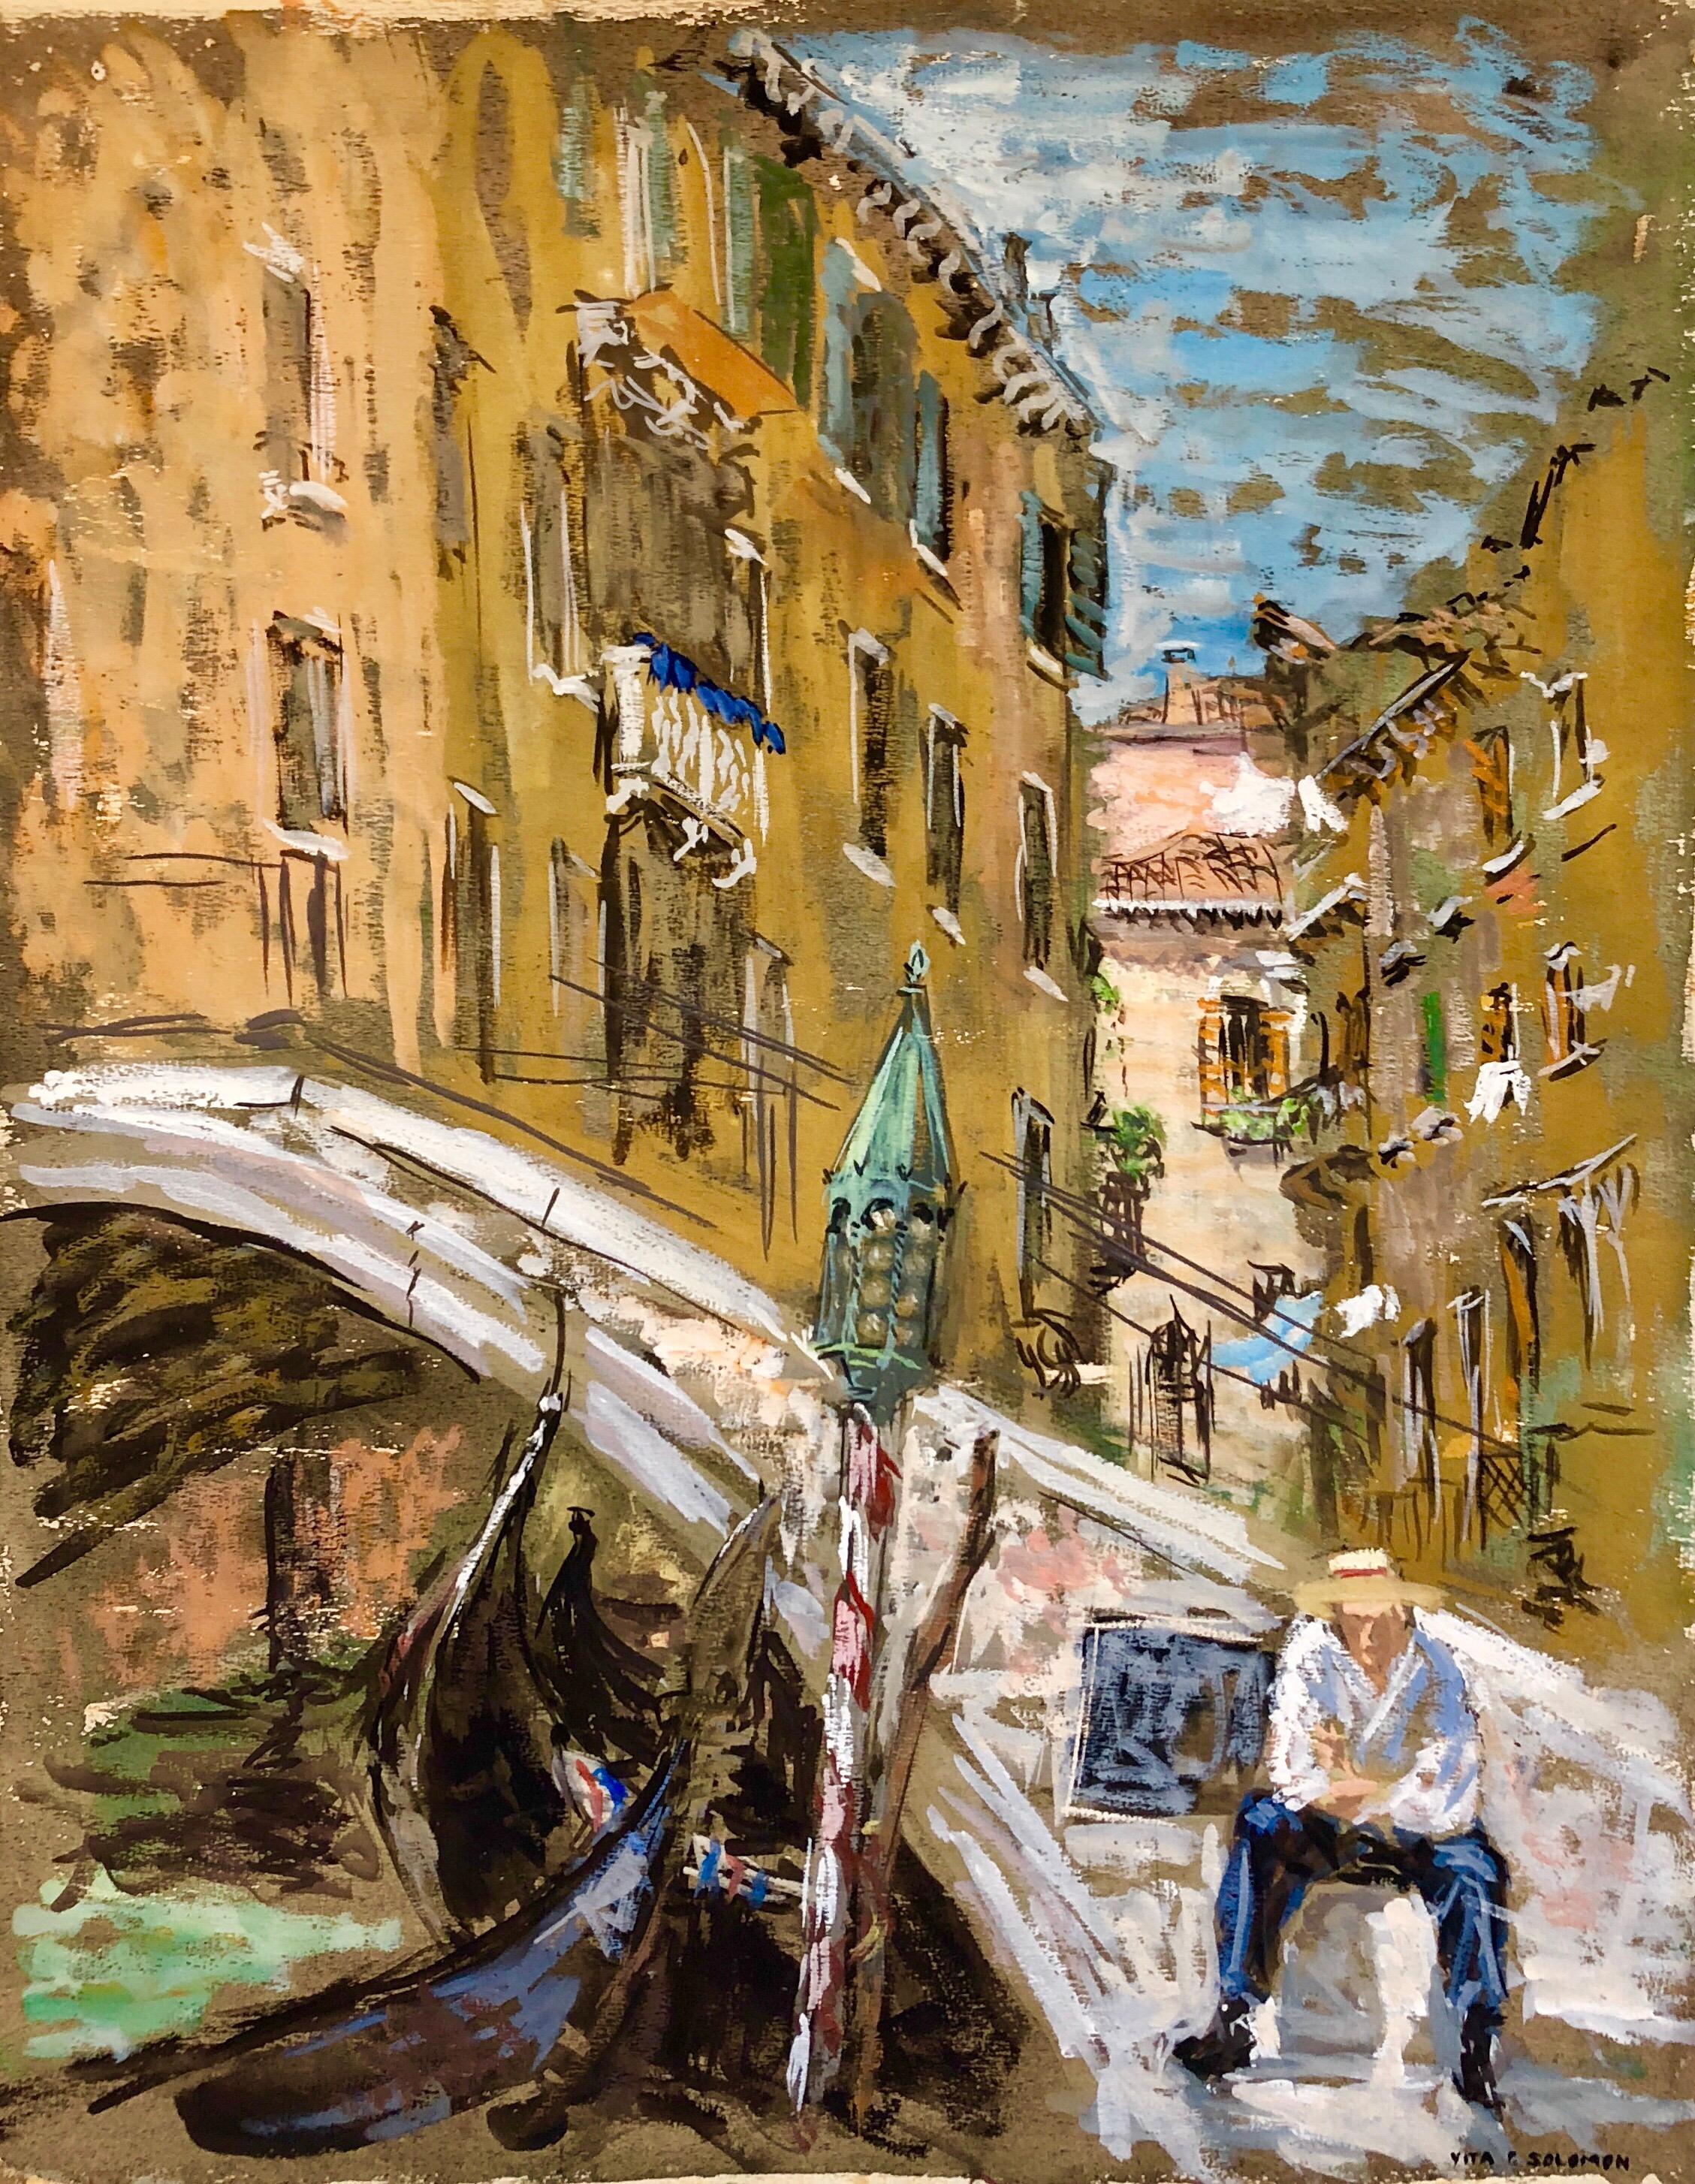 Vita Solomon Landscape Painting - Venice Italy Landscape Gouache Painting Canal with Gondolier Bridge of Sighs